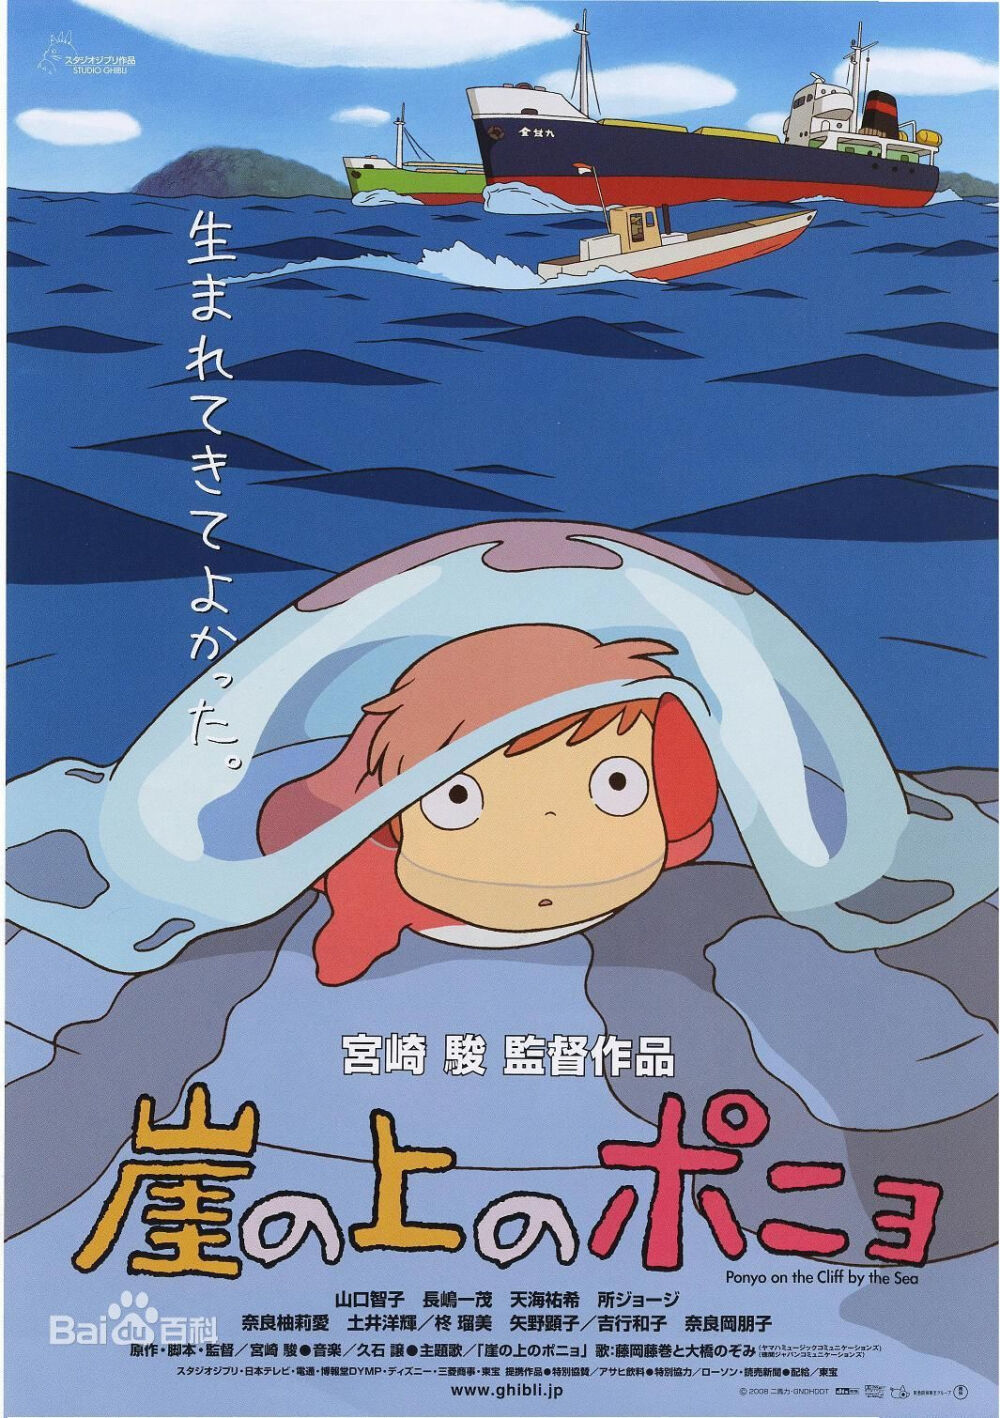 《悬崖上的金鱼公主》由宫崎骏导演、编剧，吉卜力工作室制作的长篇动画电影，影片于2008年7月19日在日本首映。故事描述一个住在深海里的人鱼波妞，为了跟小男孩宗介一同生活，一心一意想变成人类；同时也描述了五岁大的宗介如何信守承诺的故事。